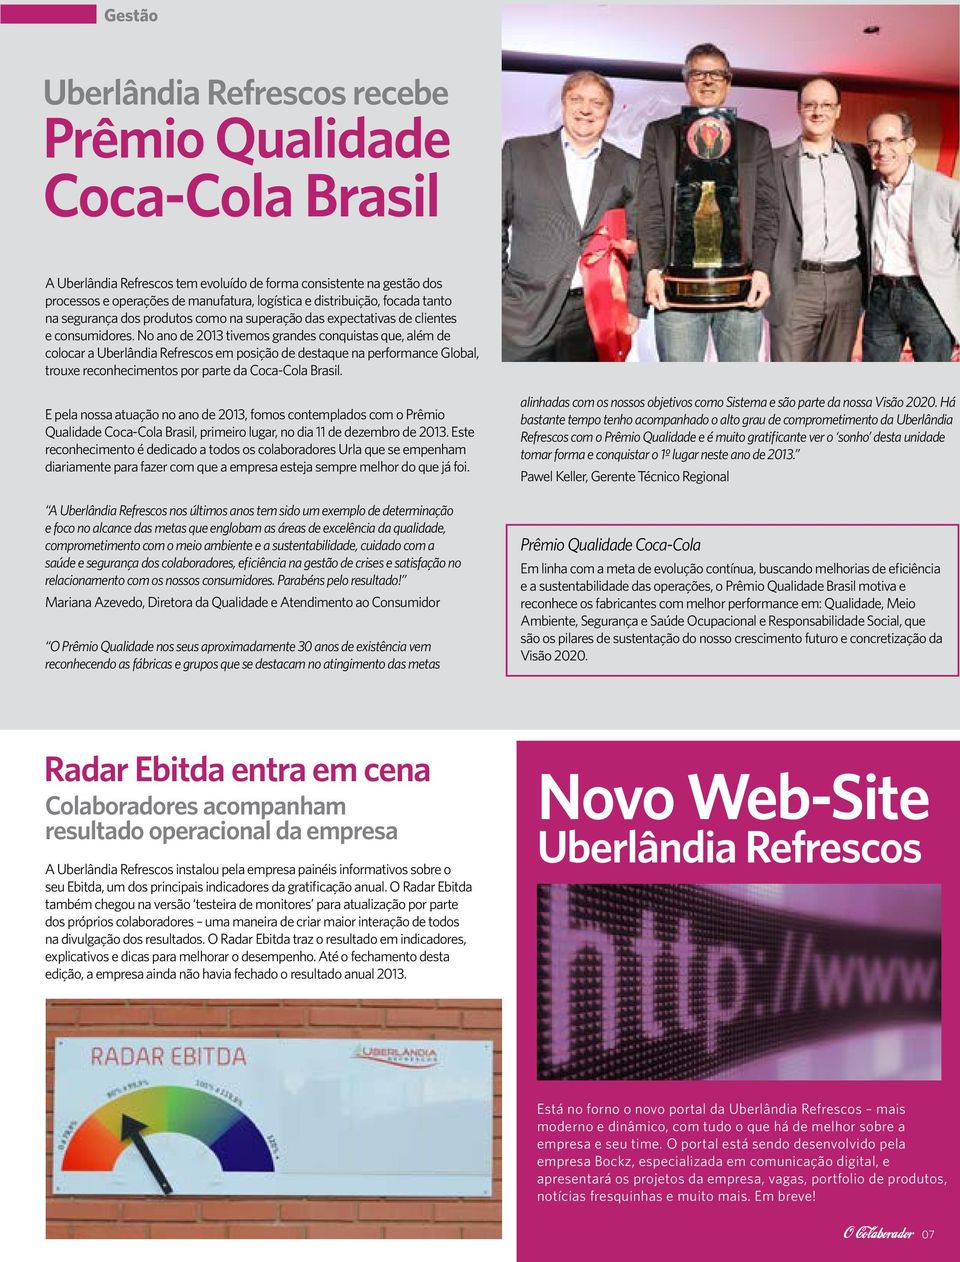 No ano de 2013 tivemos grandes conquistas que, além de colocar a Uberlândia Refrescos em posição de destaque na performance Global, trouxe reconhecimentos por parte da Coca-Cola Brasil.